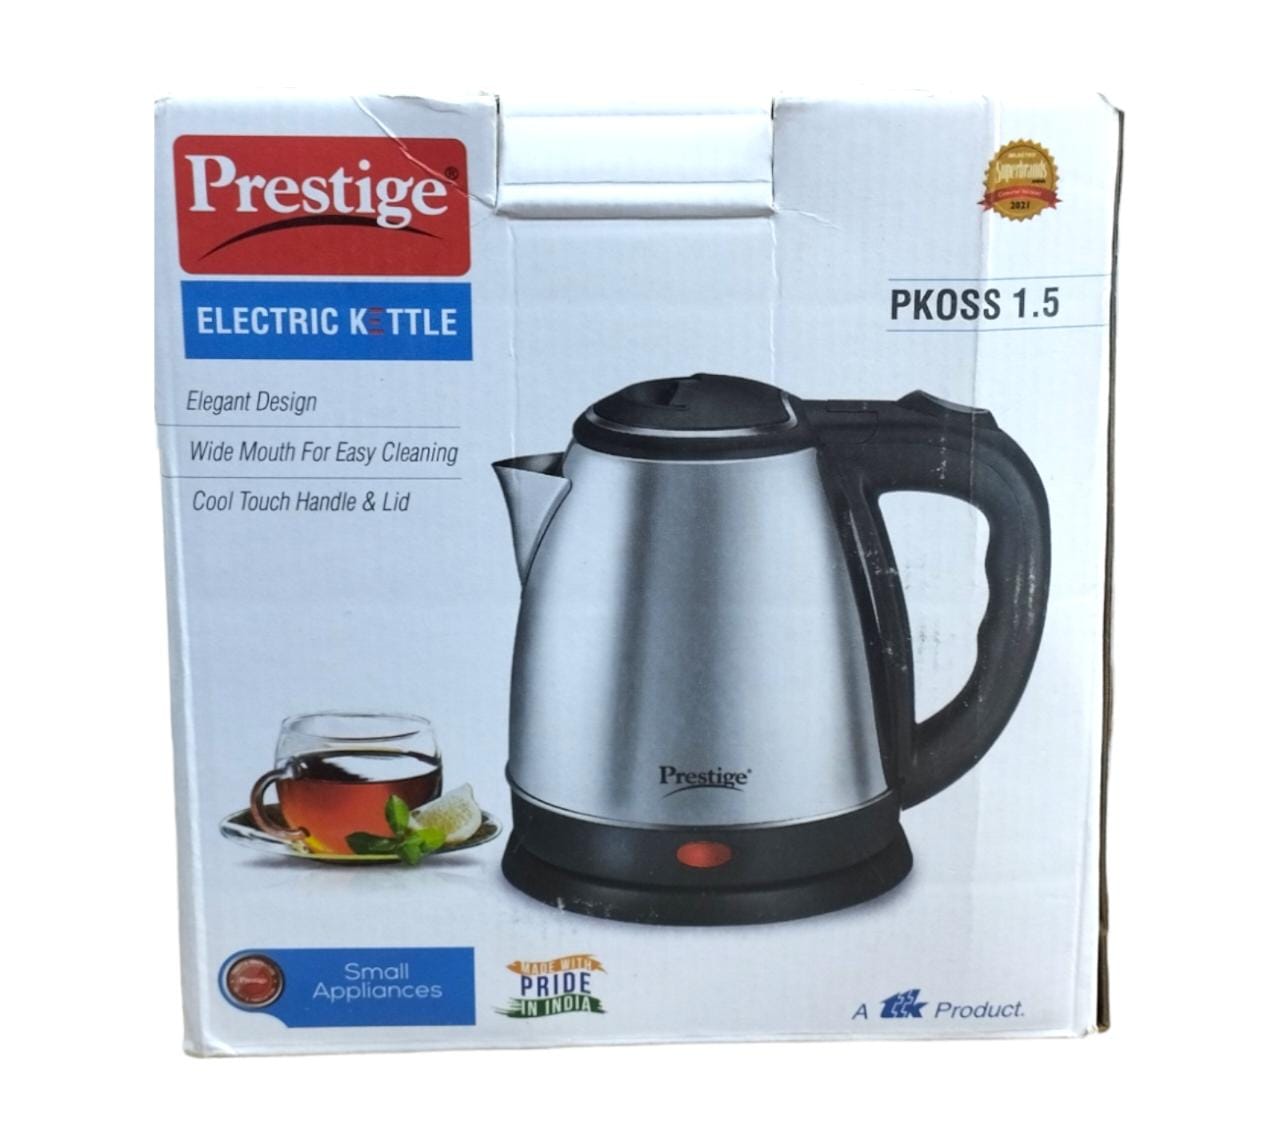 Prestige electric kettle 